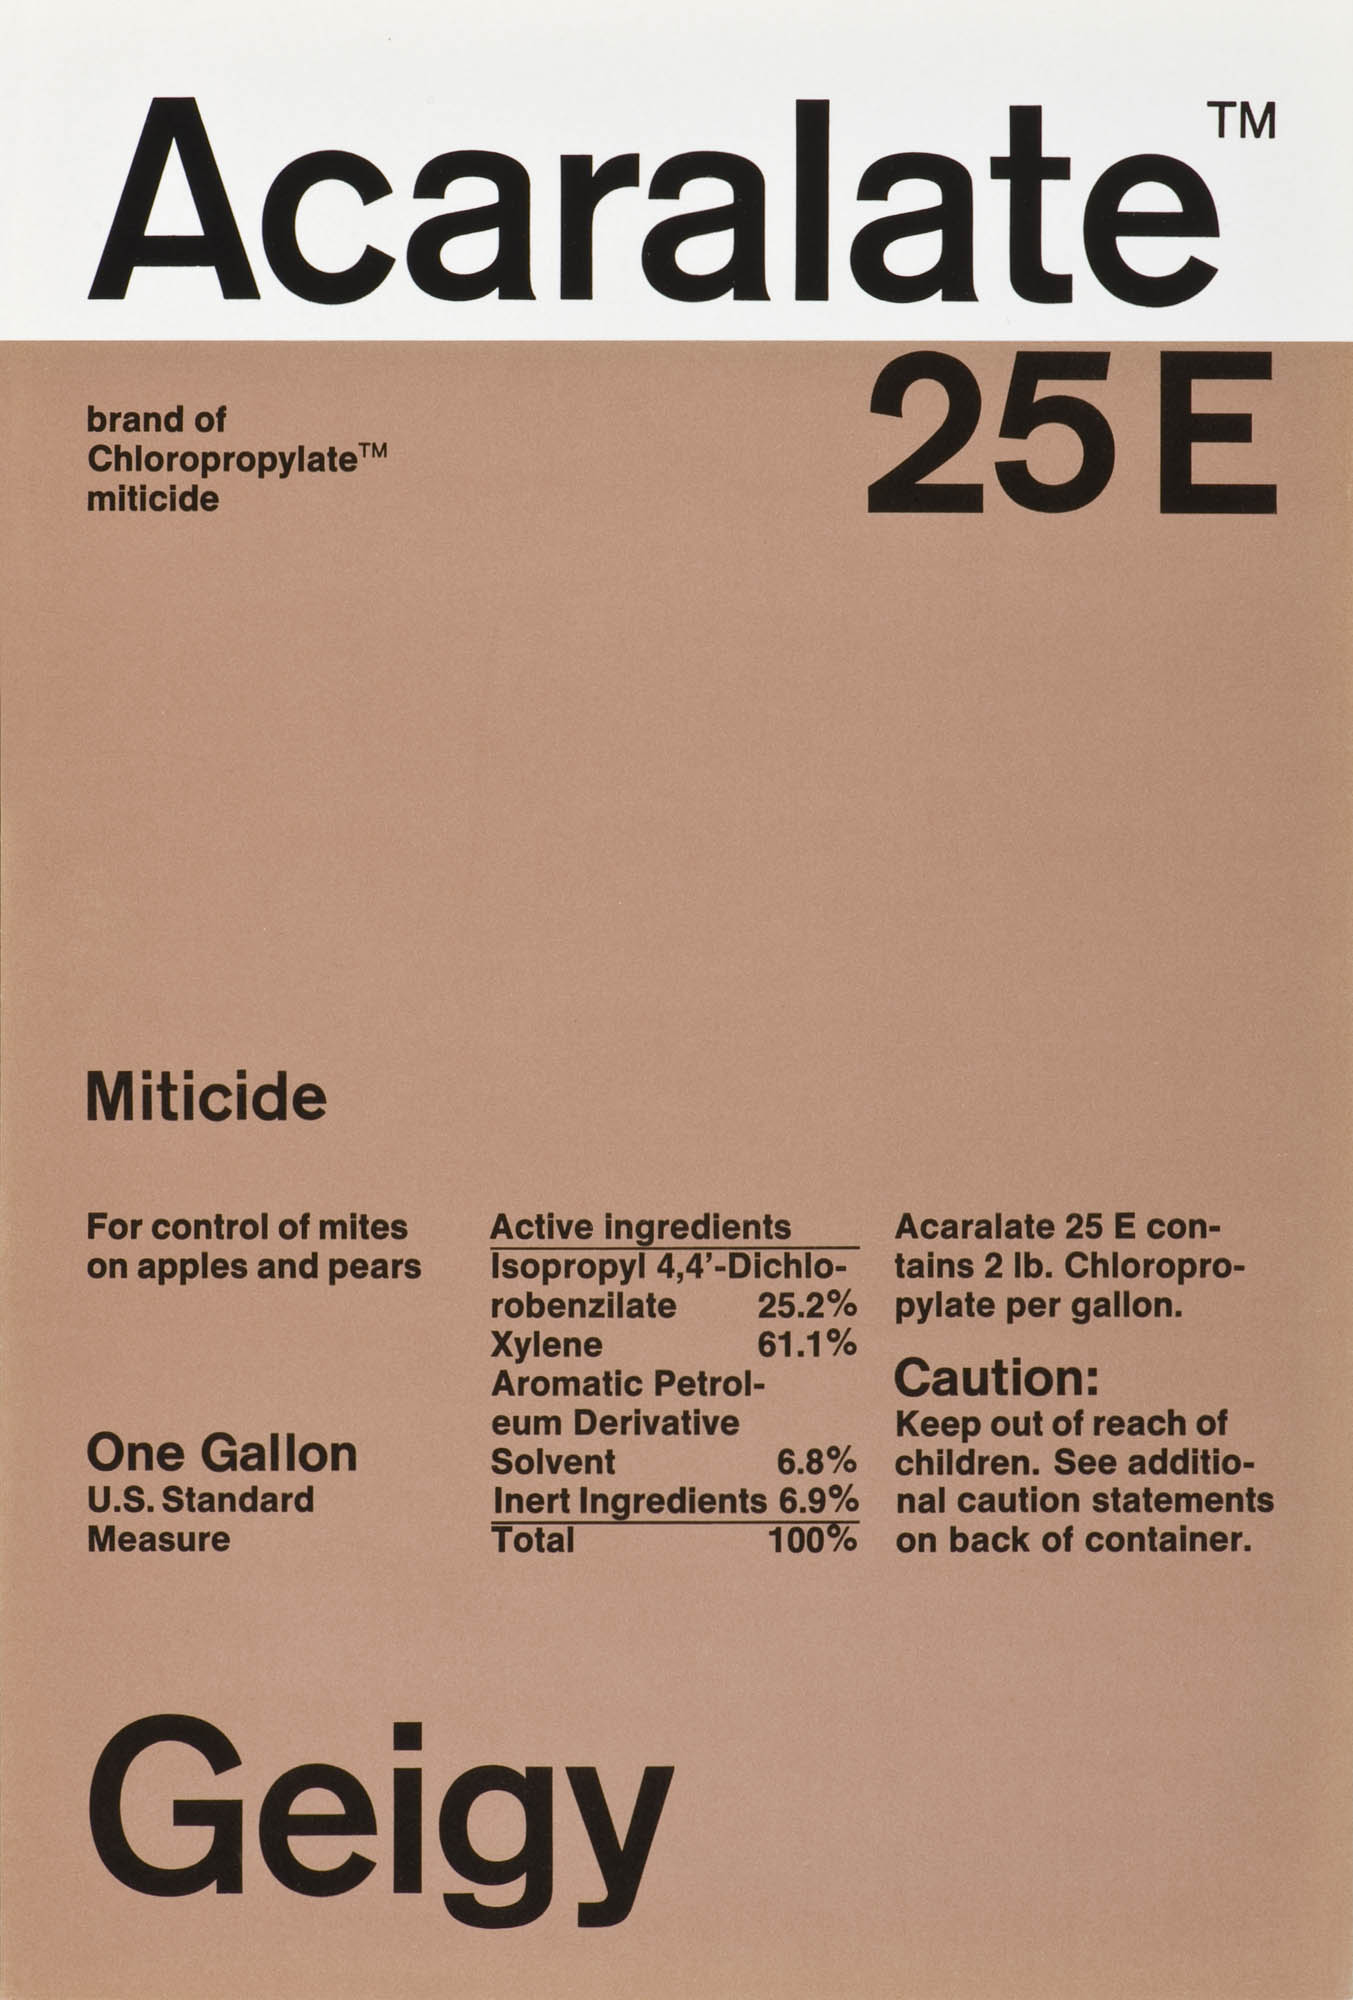 Acaralate 25E Geigy – Miticide Markus Löw Etikette